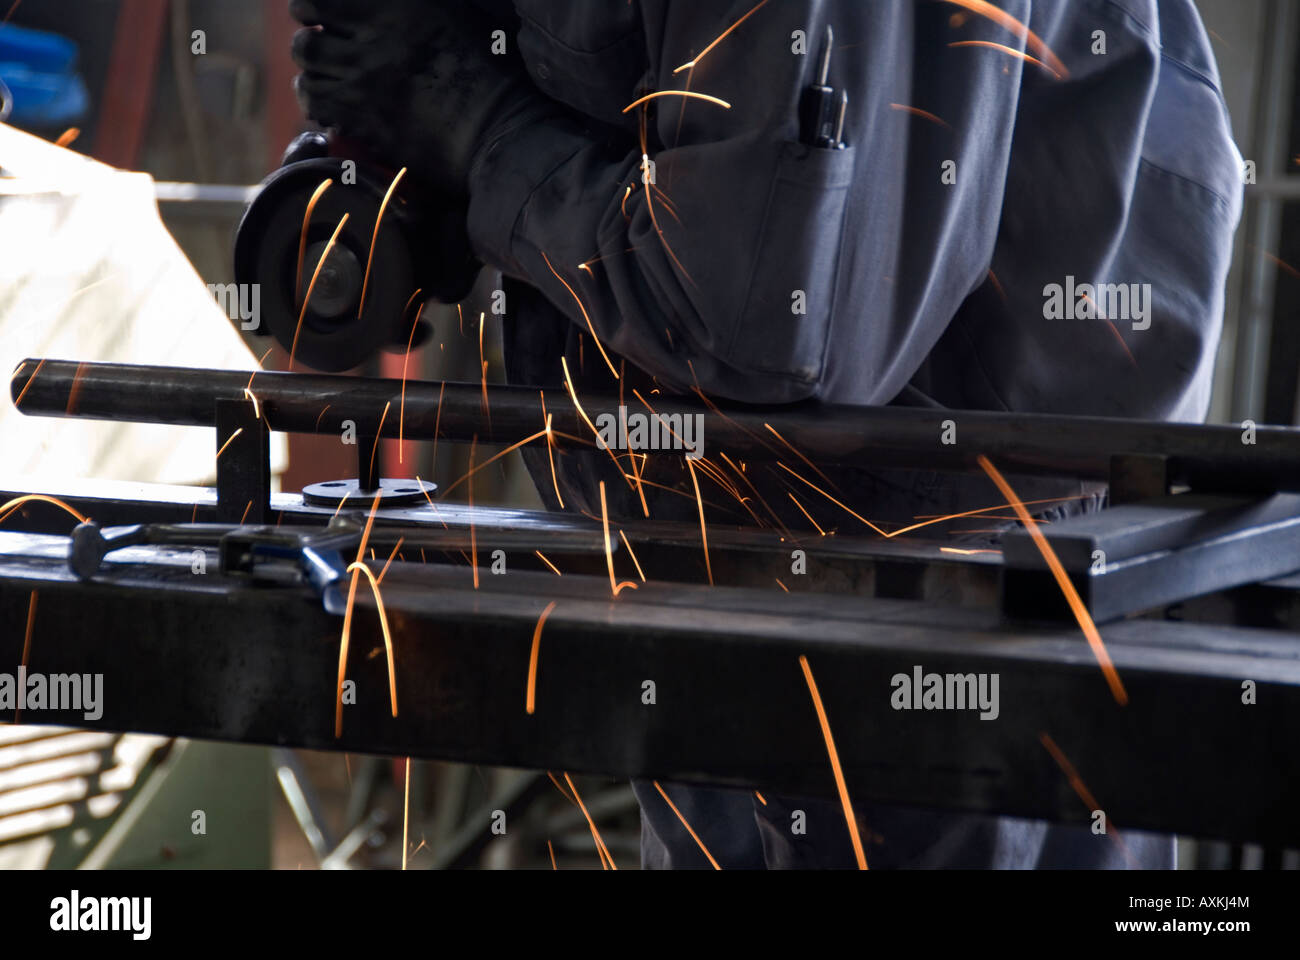 Stock Foto von Fabrikarbeiterin Schleifen Metall flach mit einer elektrischen Schleifer Stockfoto